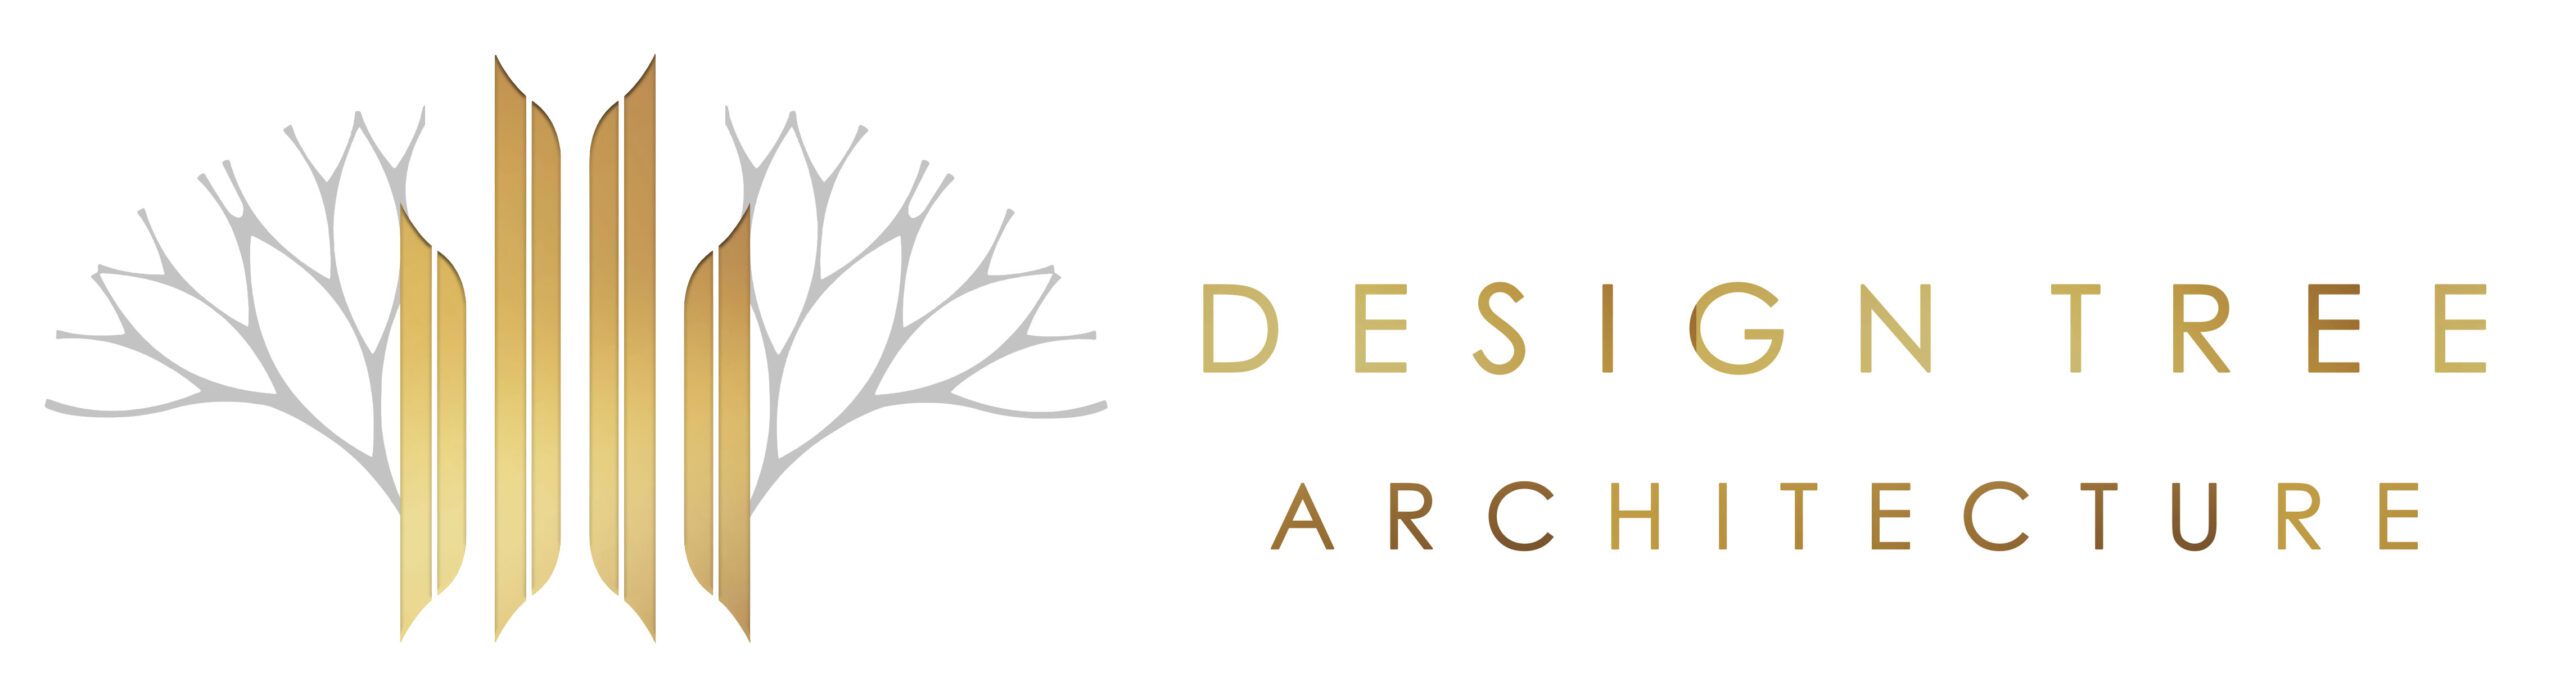 DesignTree Architecture